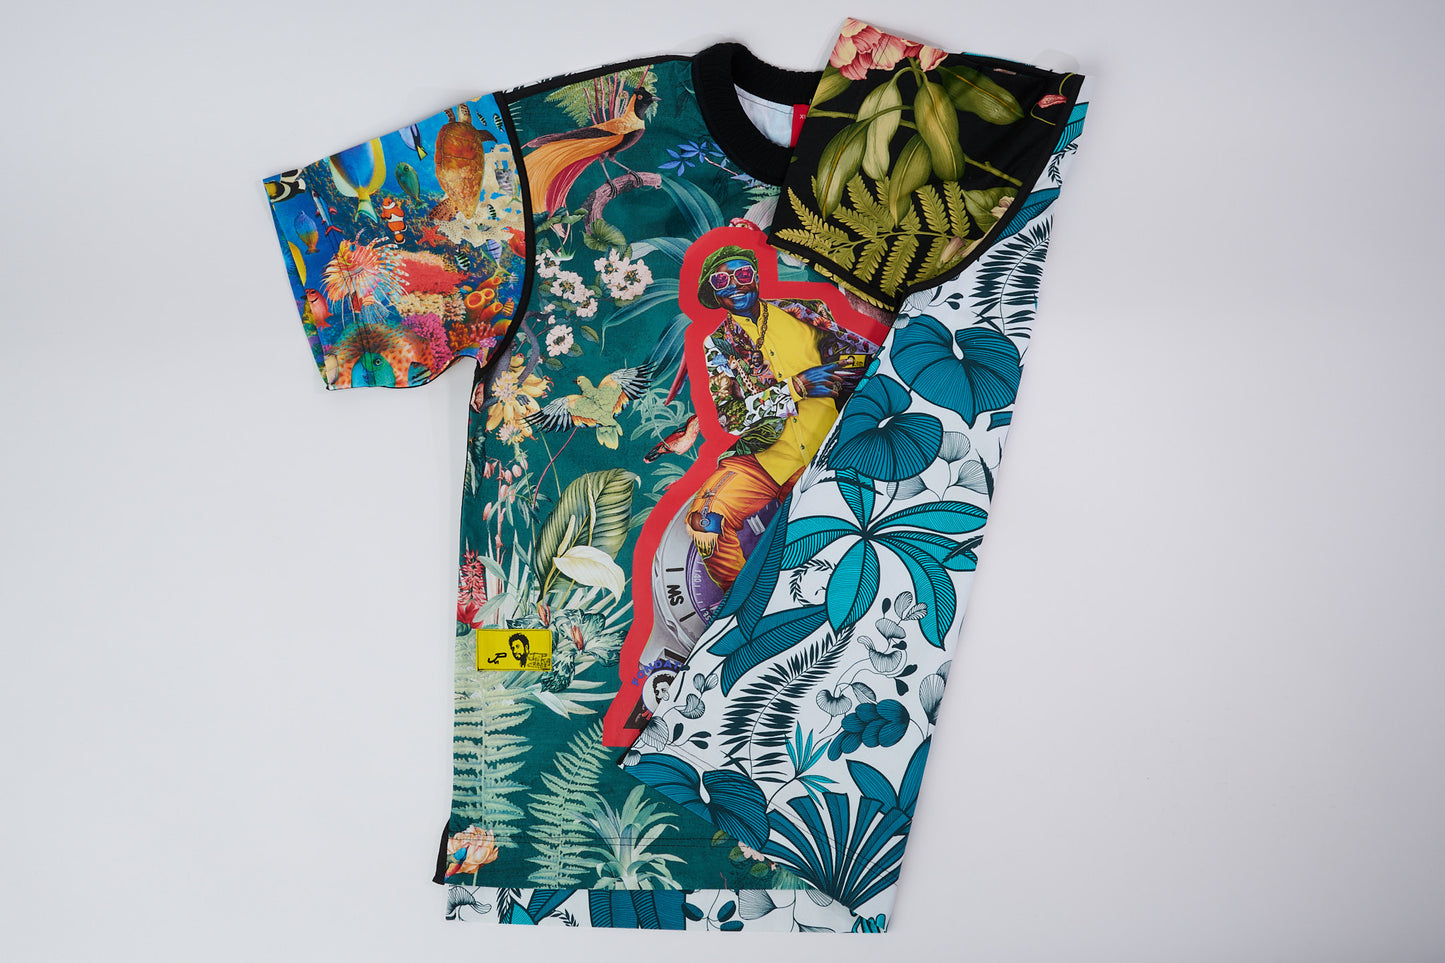 T-shirt BISENGO JP MIKA x XULY-BËT - Numéroté 13/65 - Taille L - Wearable-art inspiré du tableau "Tango ya Molato" (Le temps de la Sape) de la série de toiles BISENGO de JP MIKA.